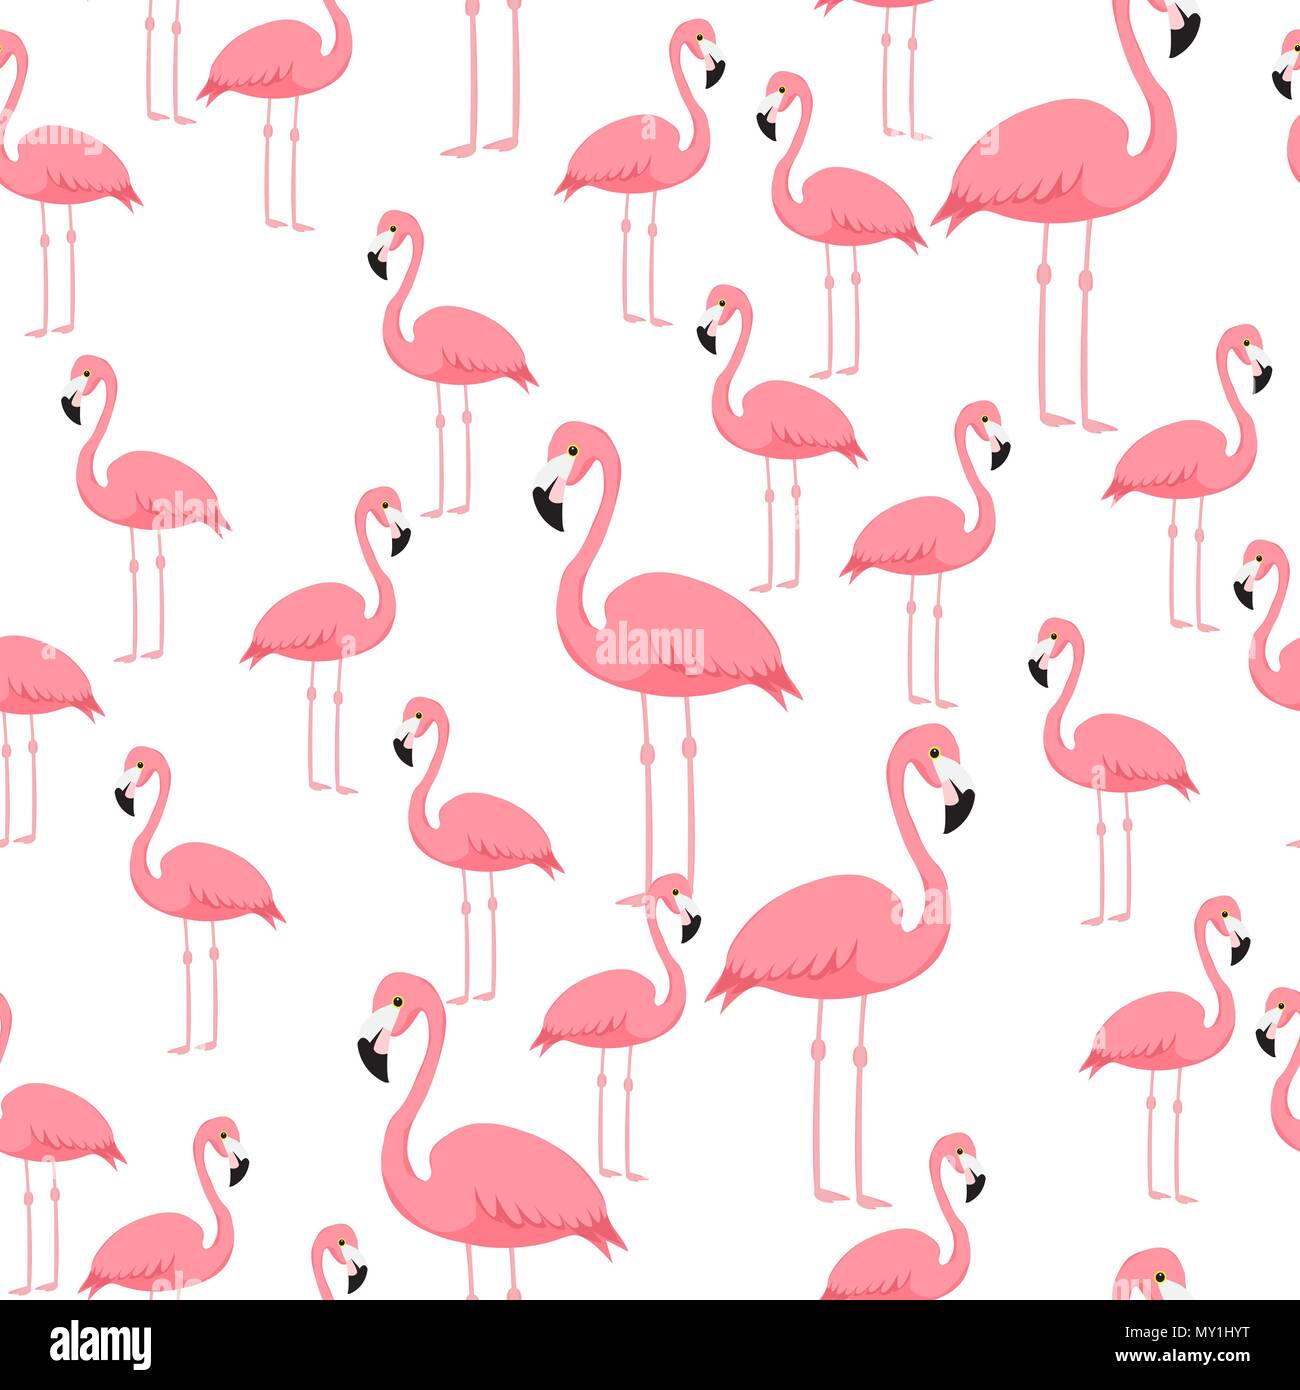 Abstractie Woordenlijst Luxe Pink flamingo seamless pattern beach art print wallpaper Stock Vector Image  & Art - Alamy